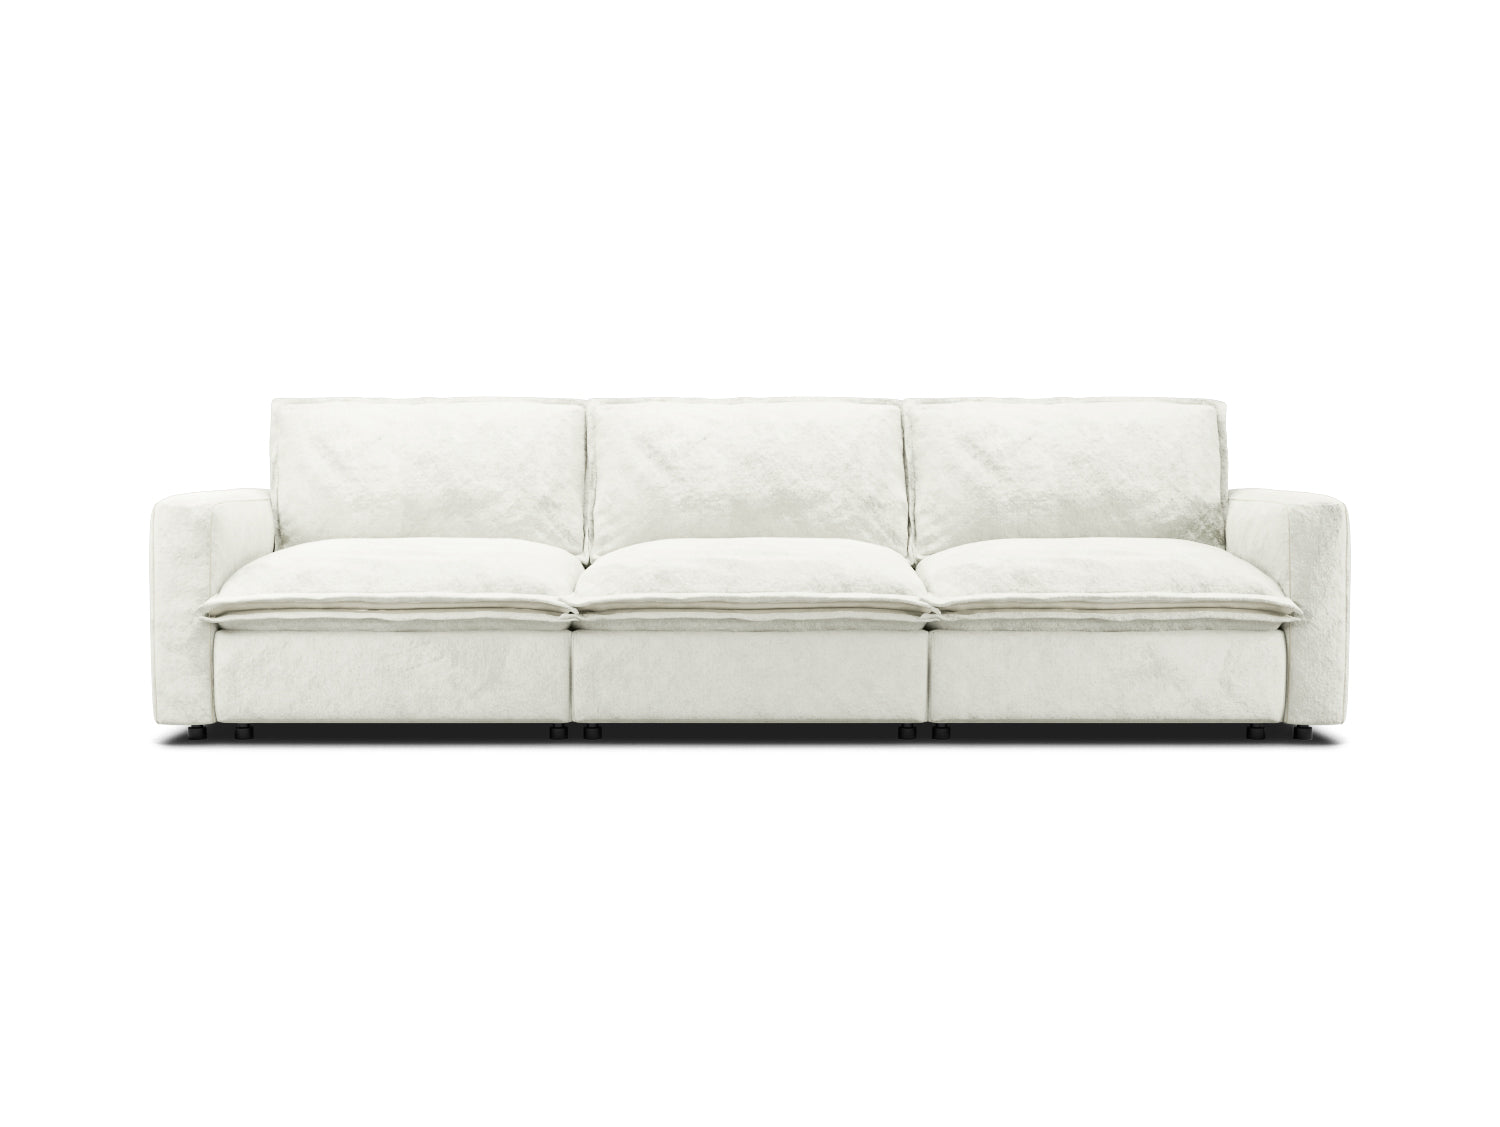 3 seat sectional sofa in white velvet, modular